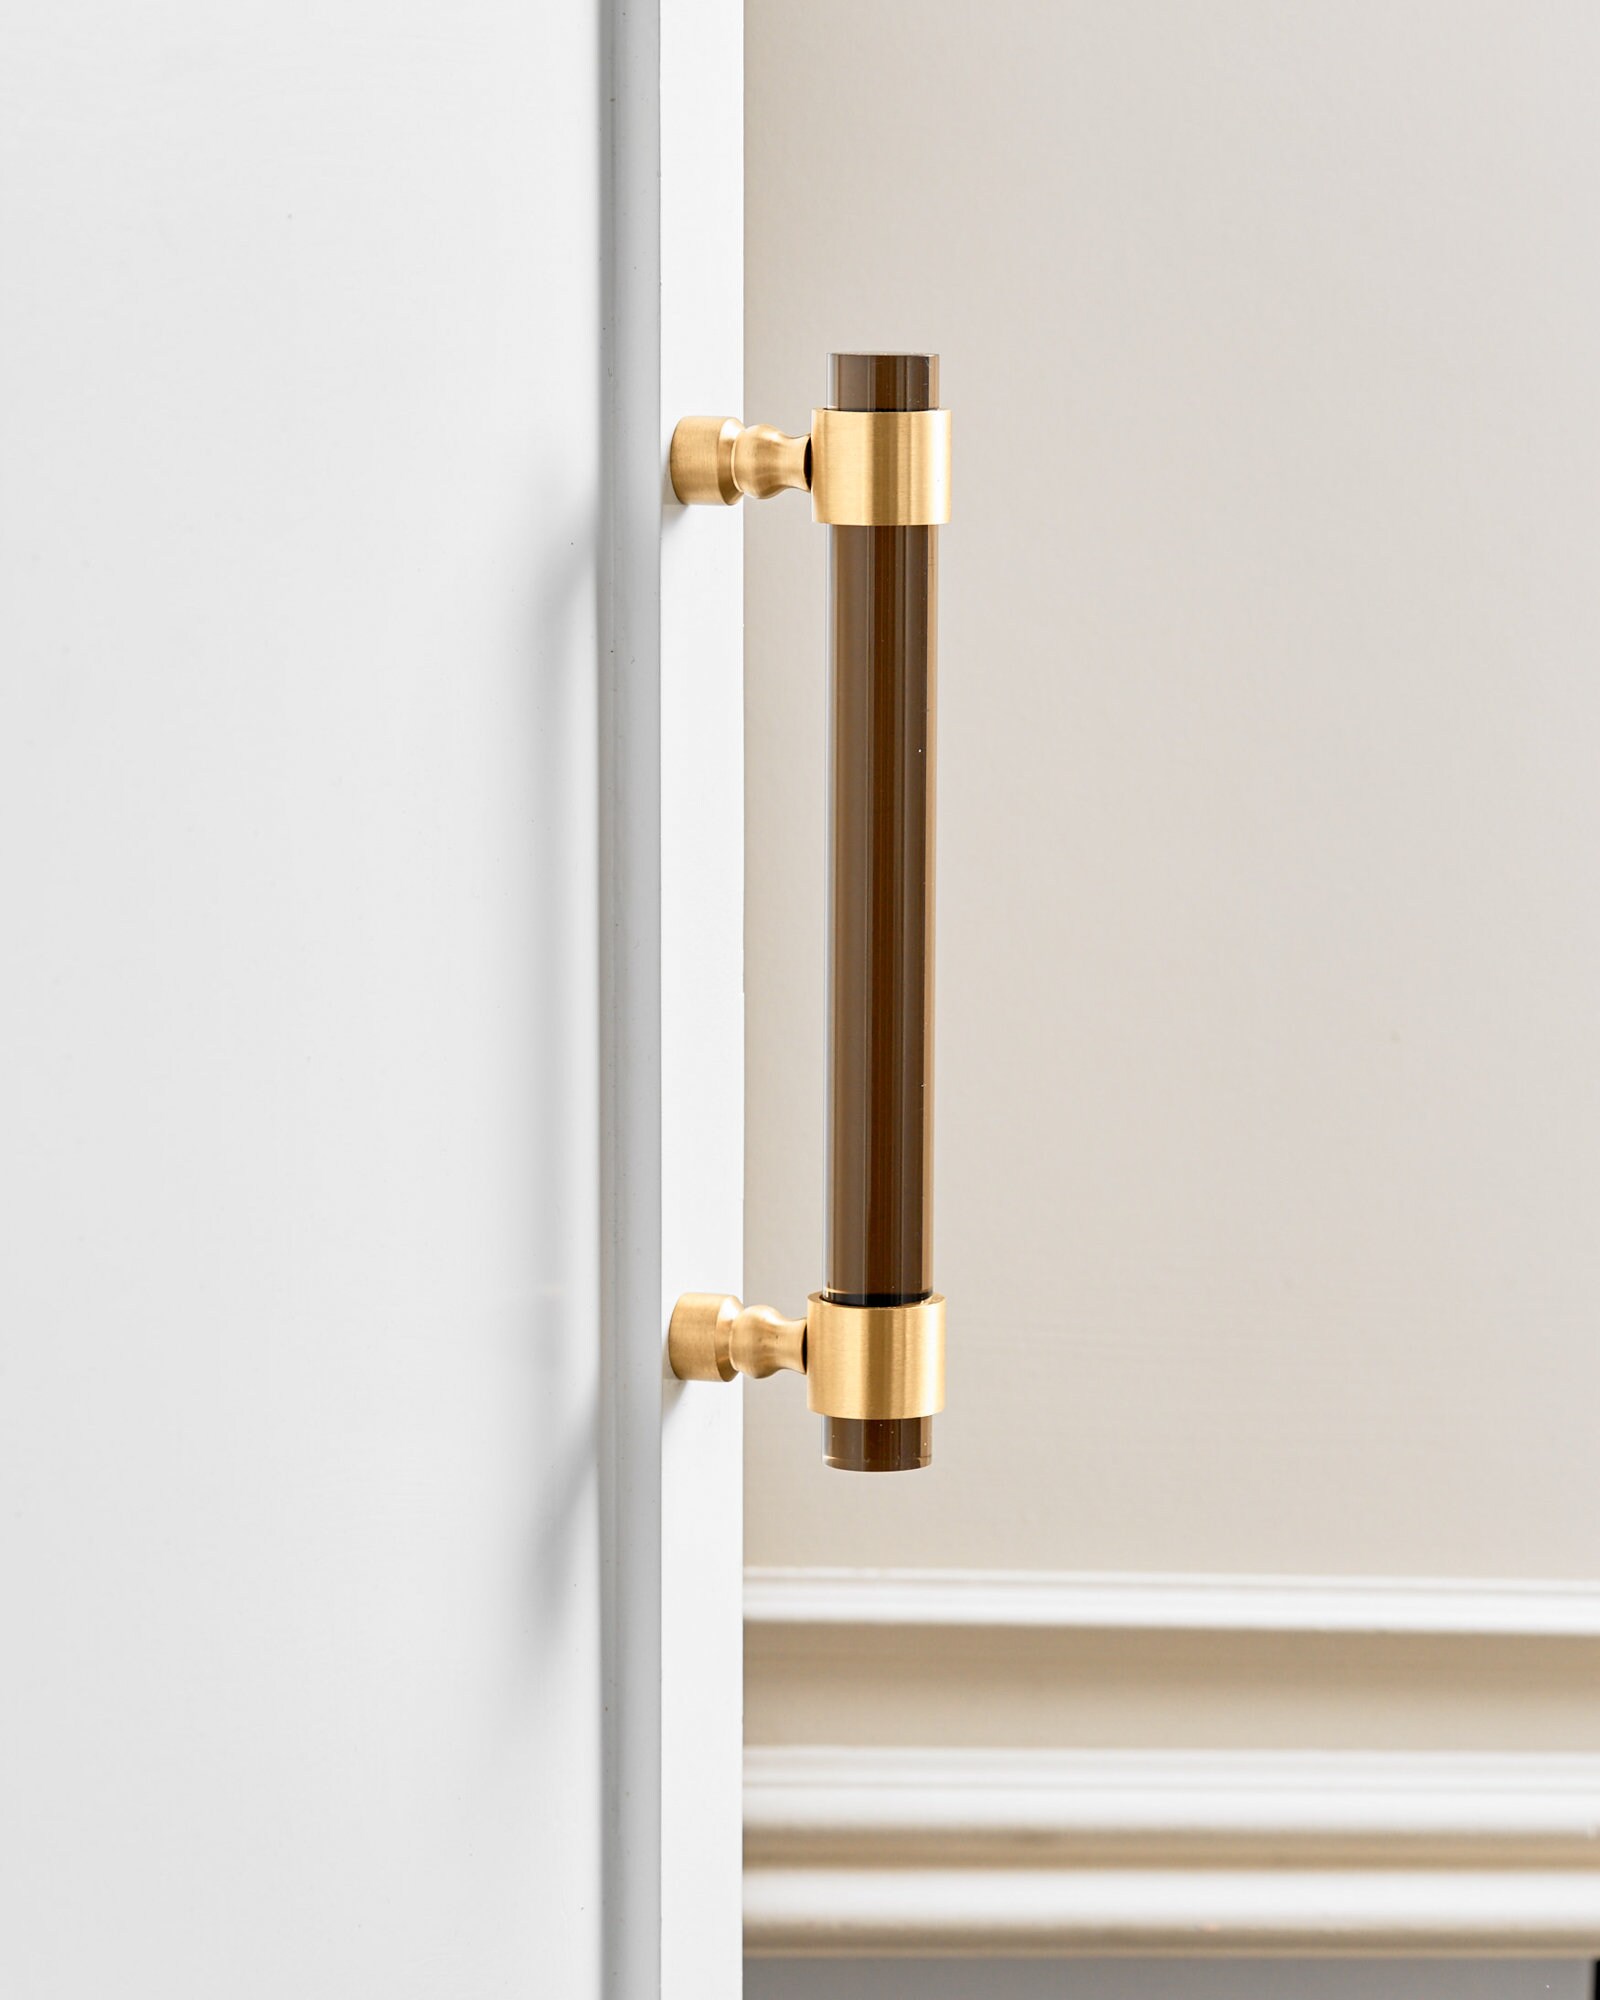 Brass Luxury Door Handle Parrot-shaped 'tamba' / Decorative Elegant Door  Pull for Wardrobes, Drawers, Front Door 